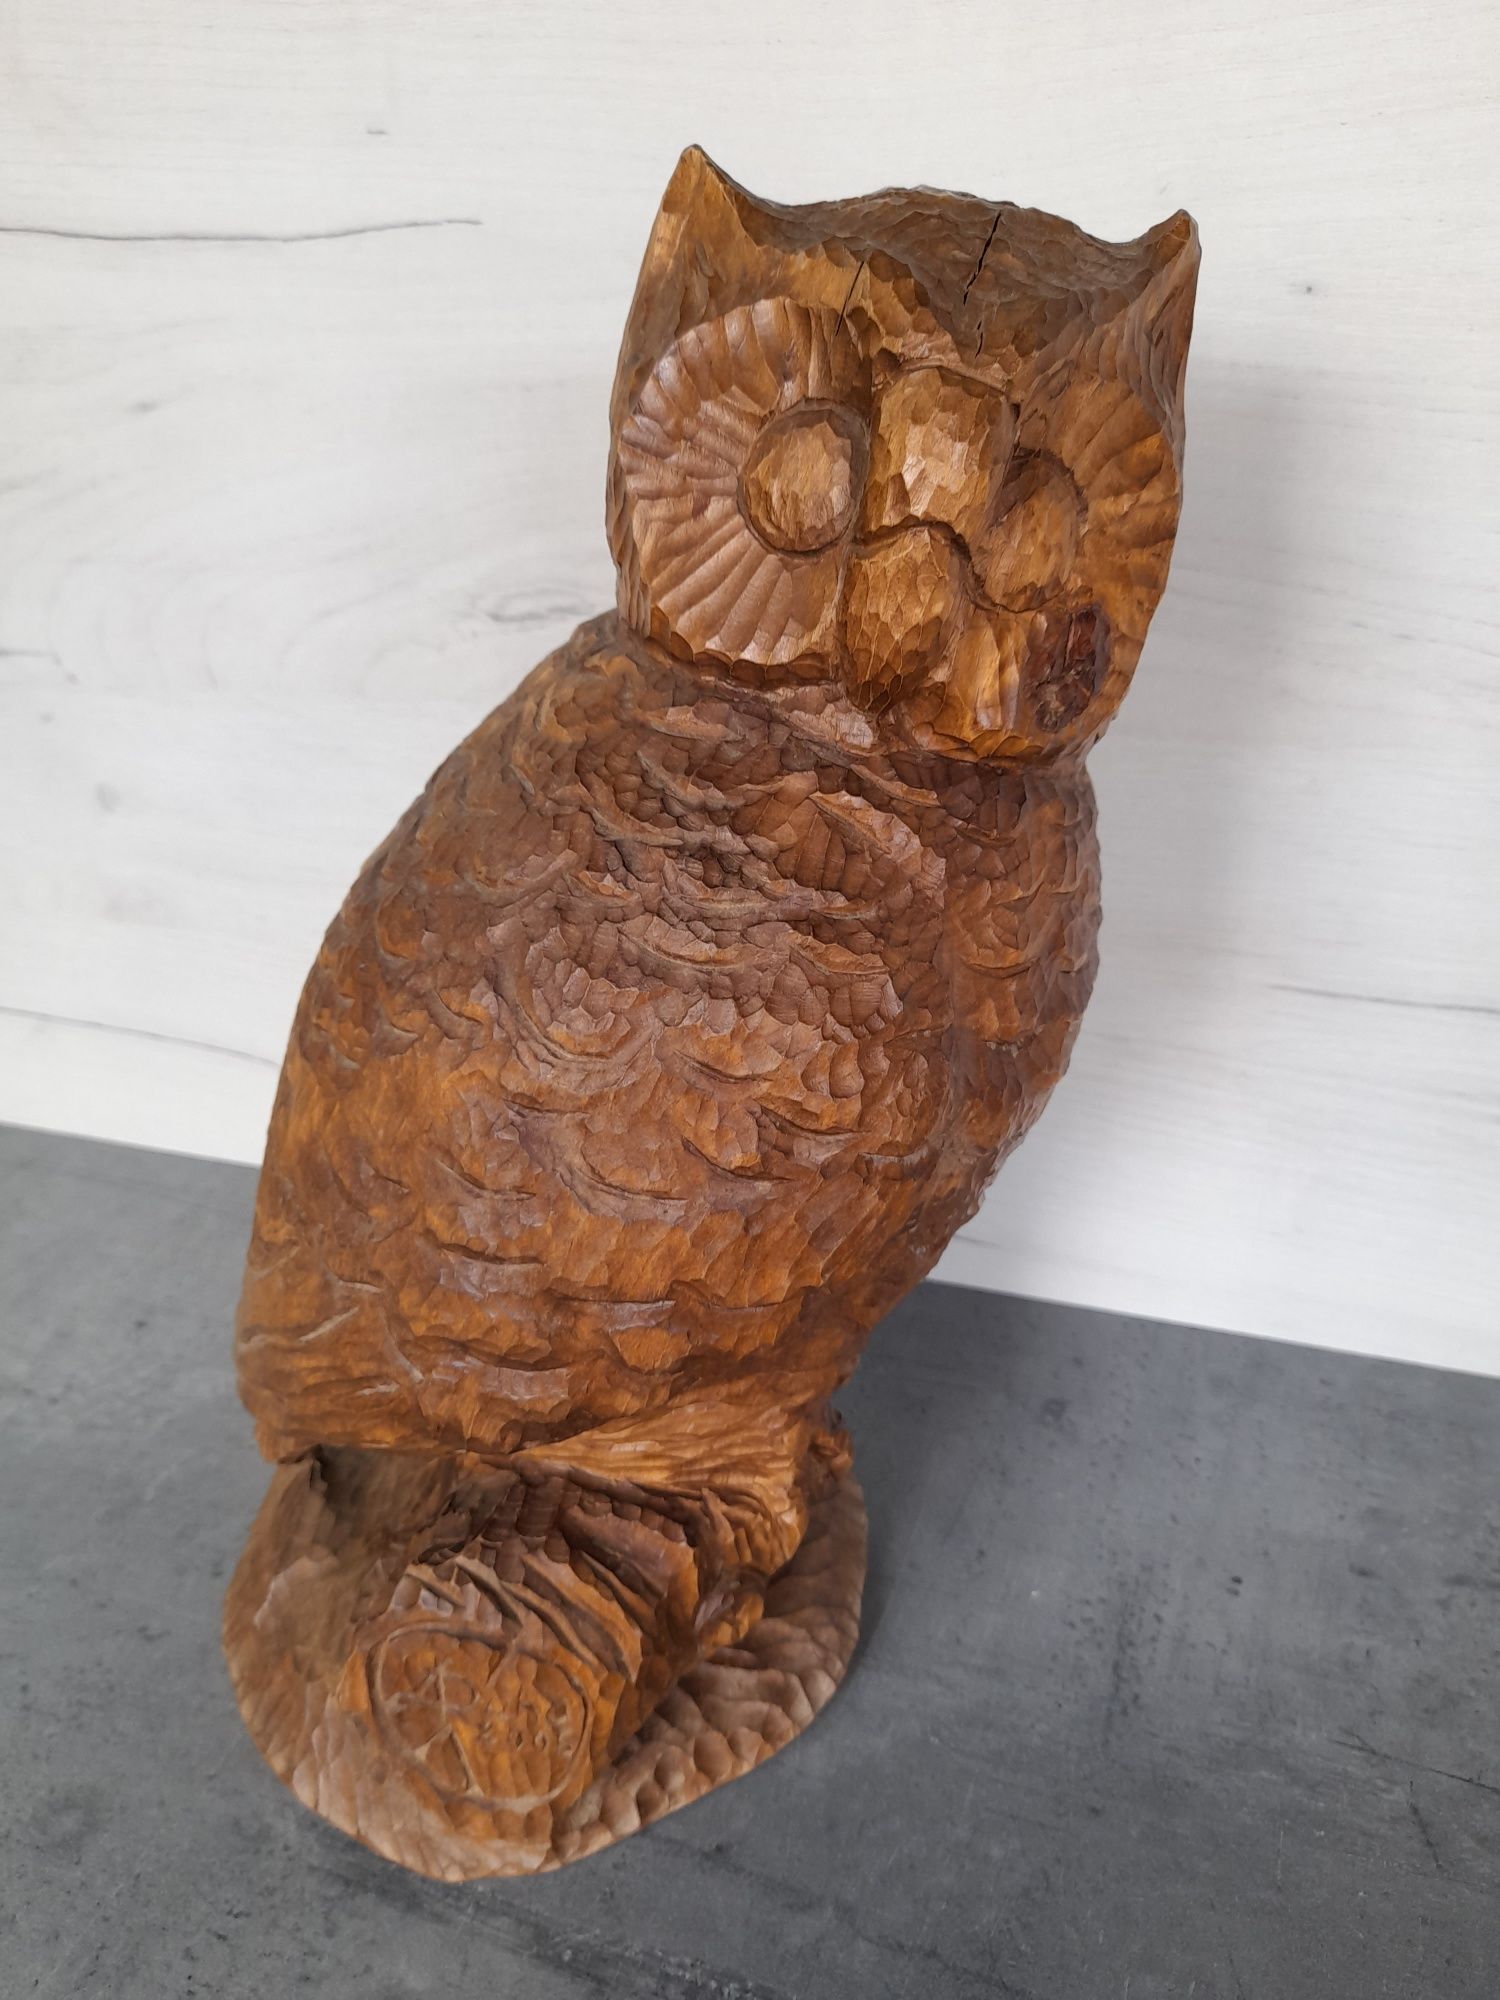 Sowa - rzeźba drewno lipowe 35cm wysoka. Las ptaki